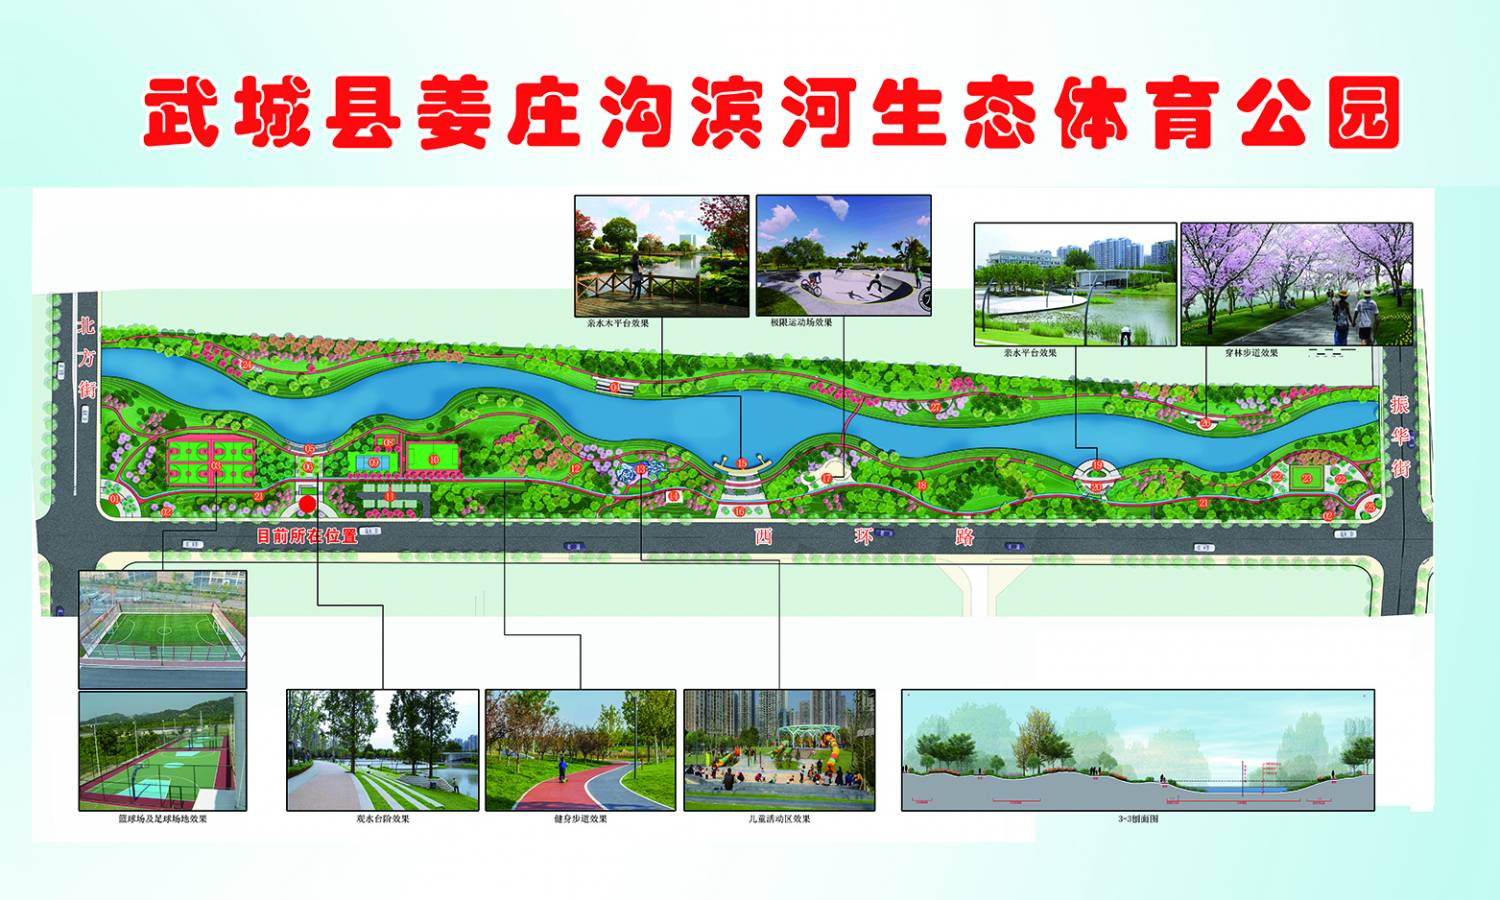 武城县城区生态水系提升暨姜庄沟滨河生态体育公园项目